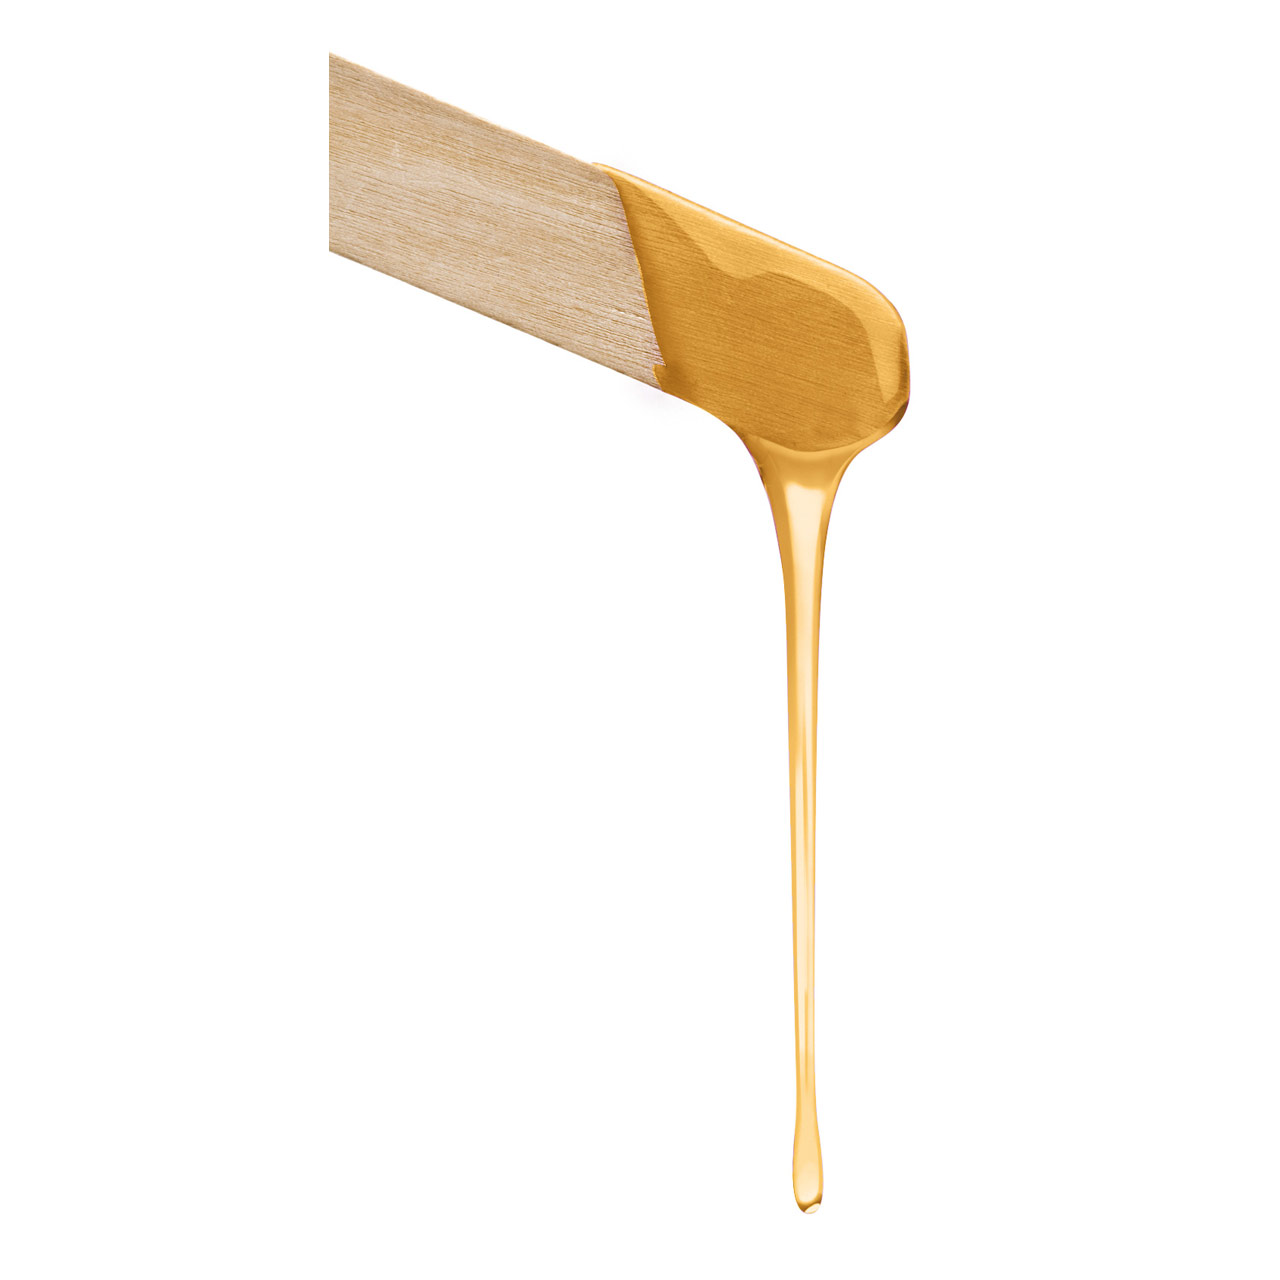  Wachspatrone Body "Honey" normale Haut 100ml mit Rollaufsatz groß